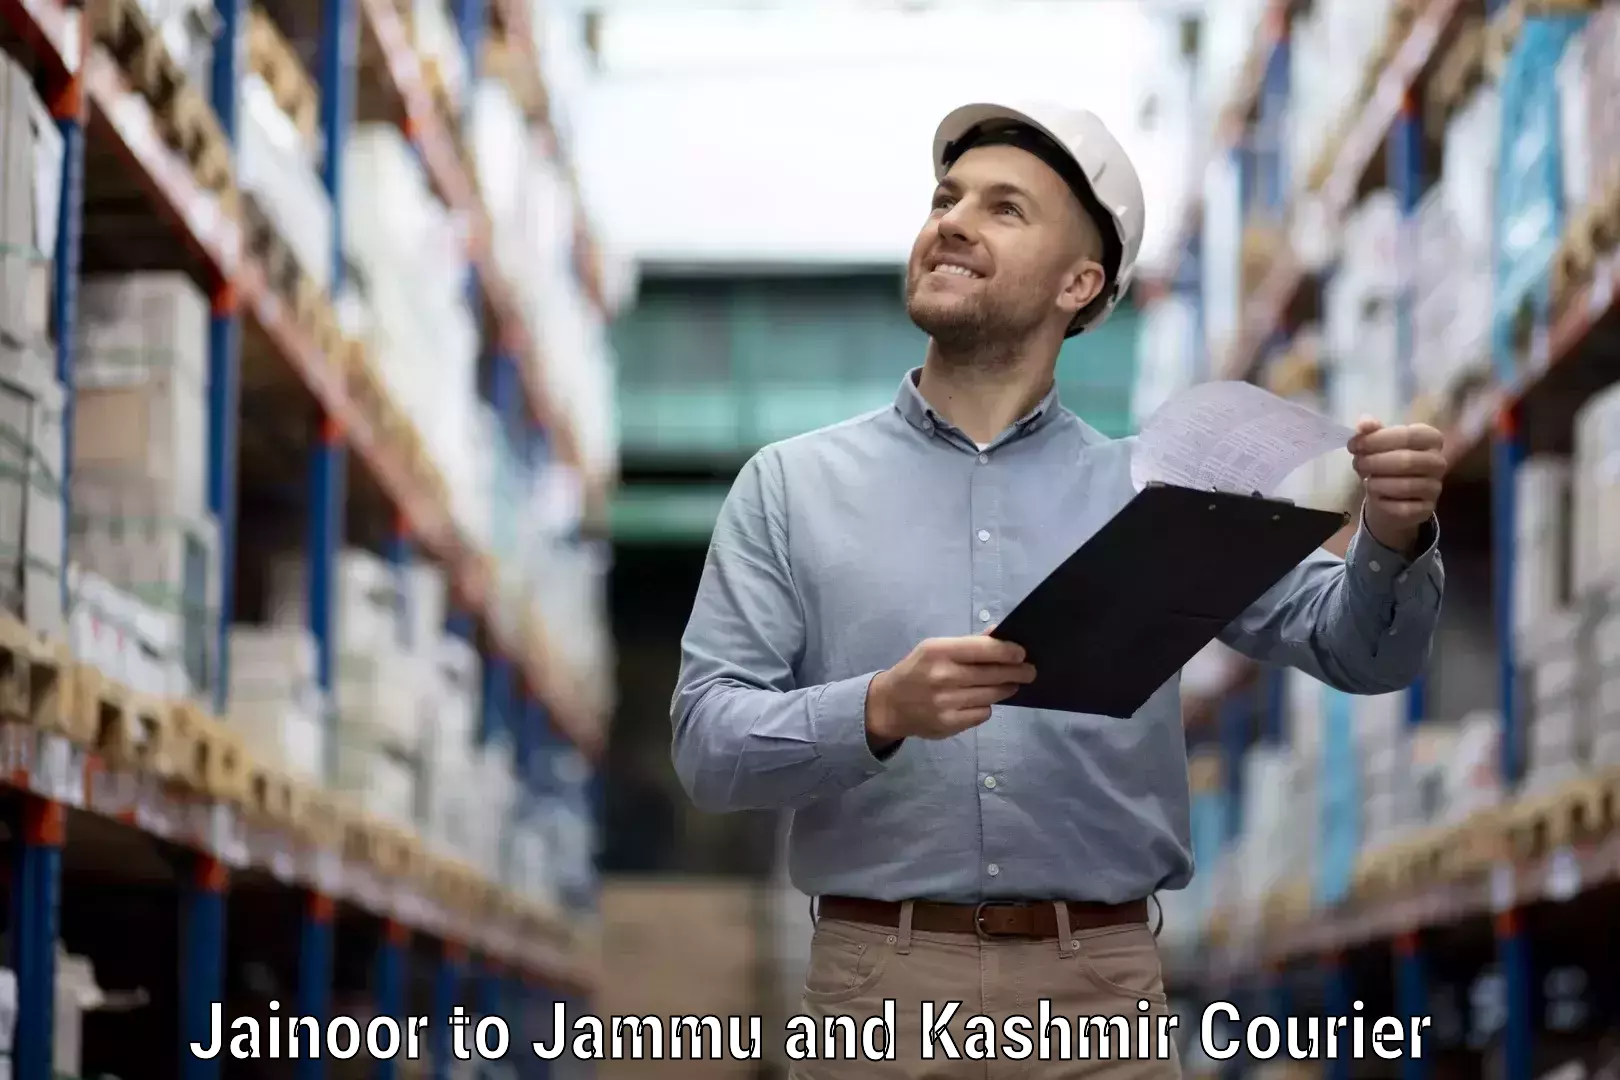 Courier dispatch services Jainoor to Shopian